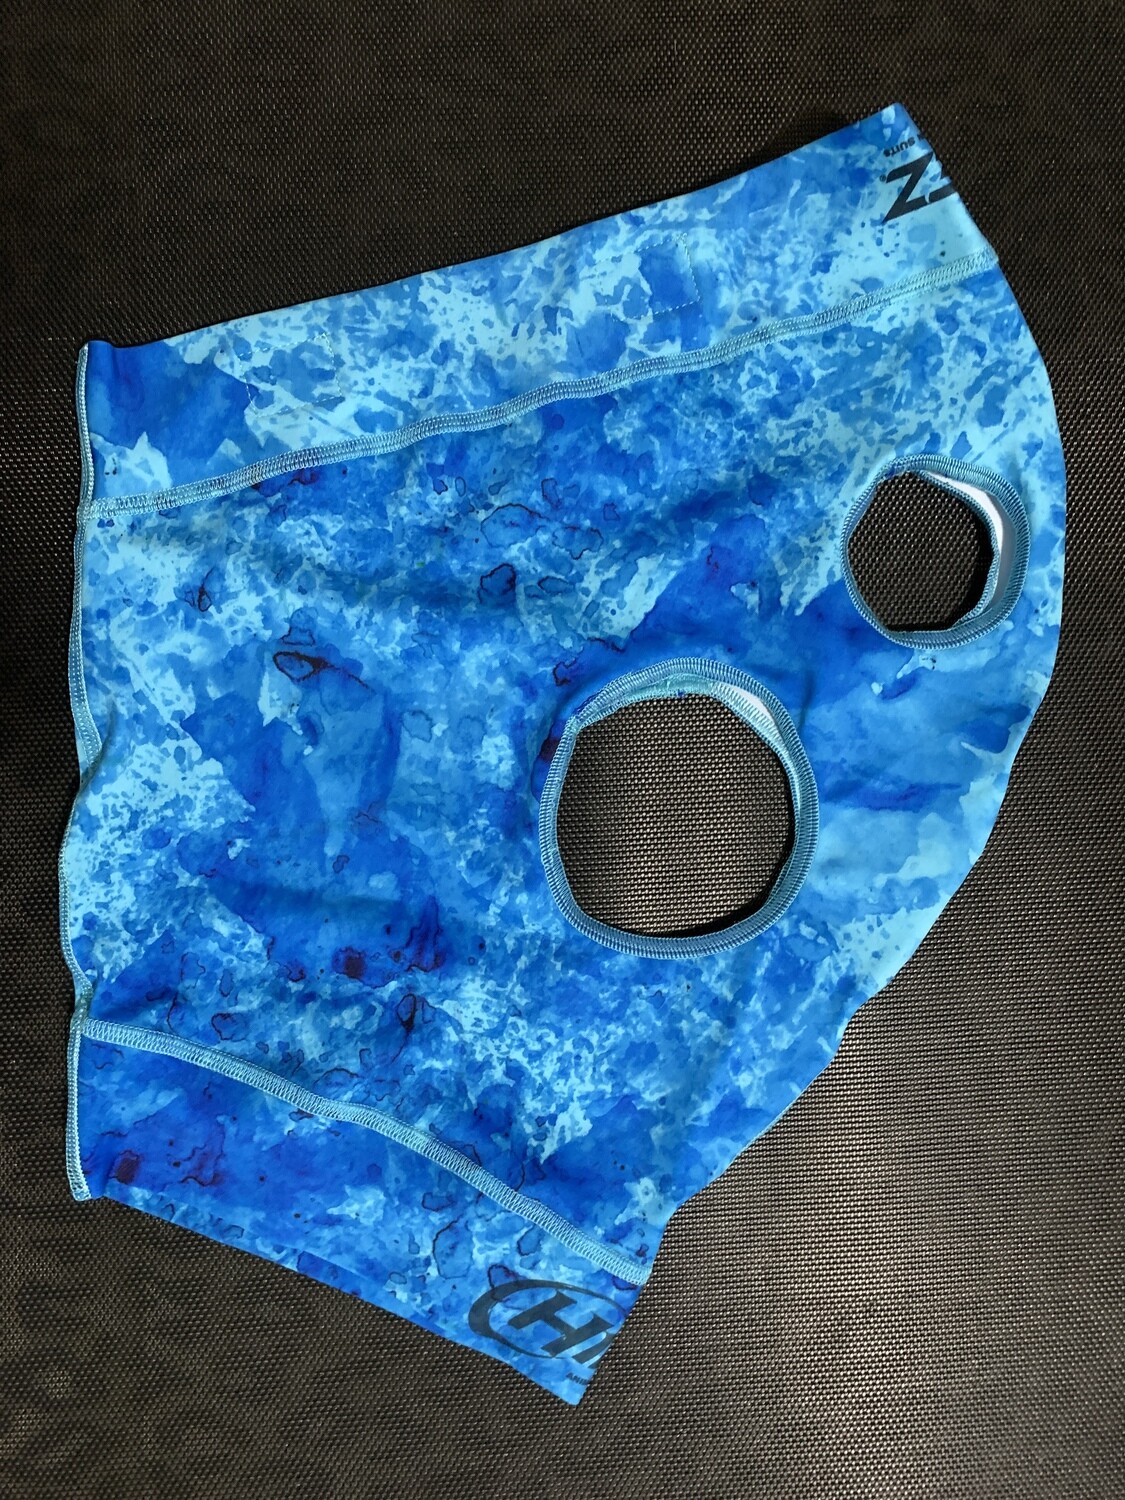 Hidez Printed Mask - medium - in-stock “ocean” print